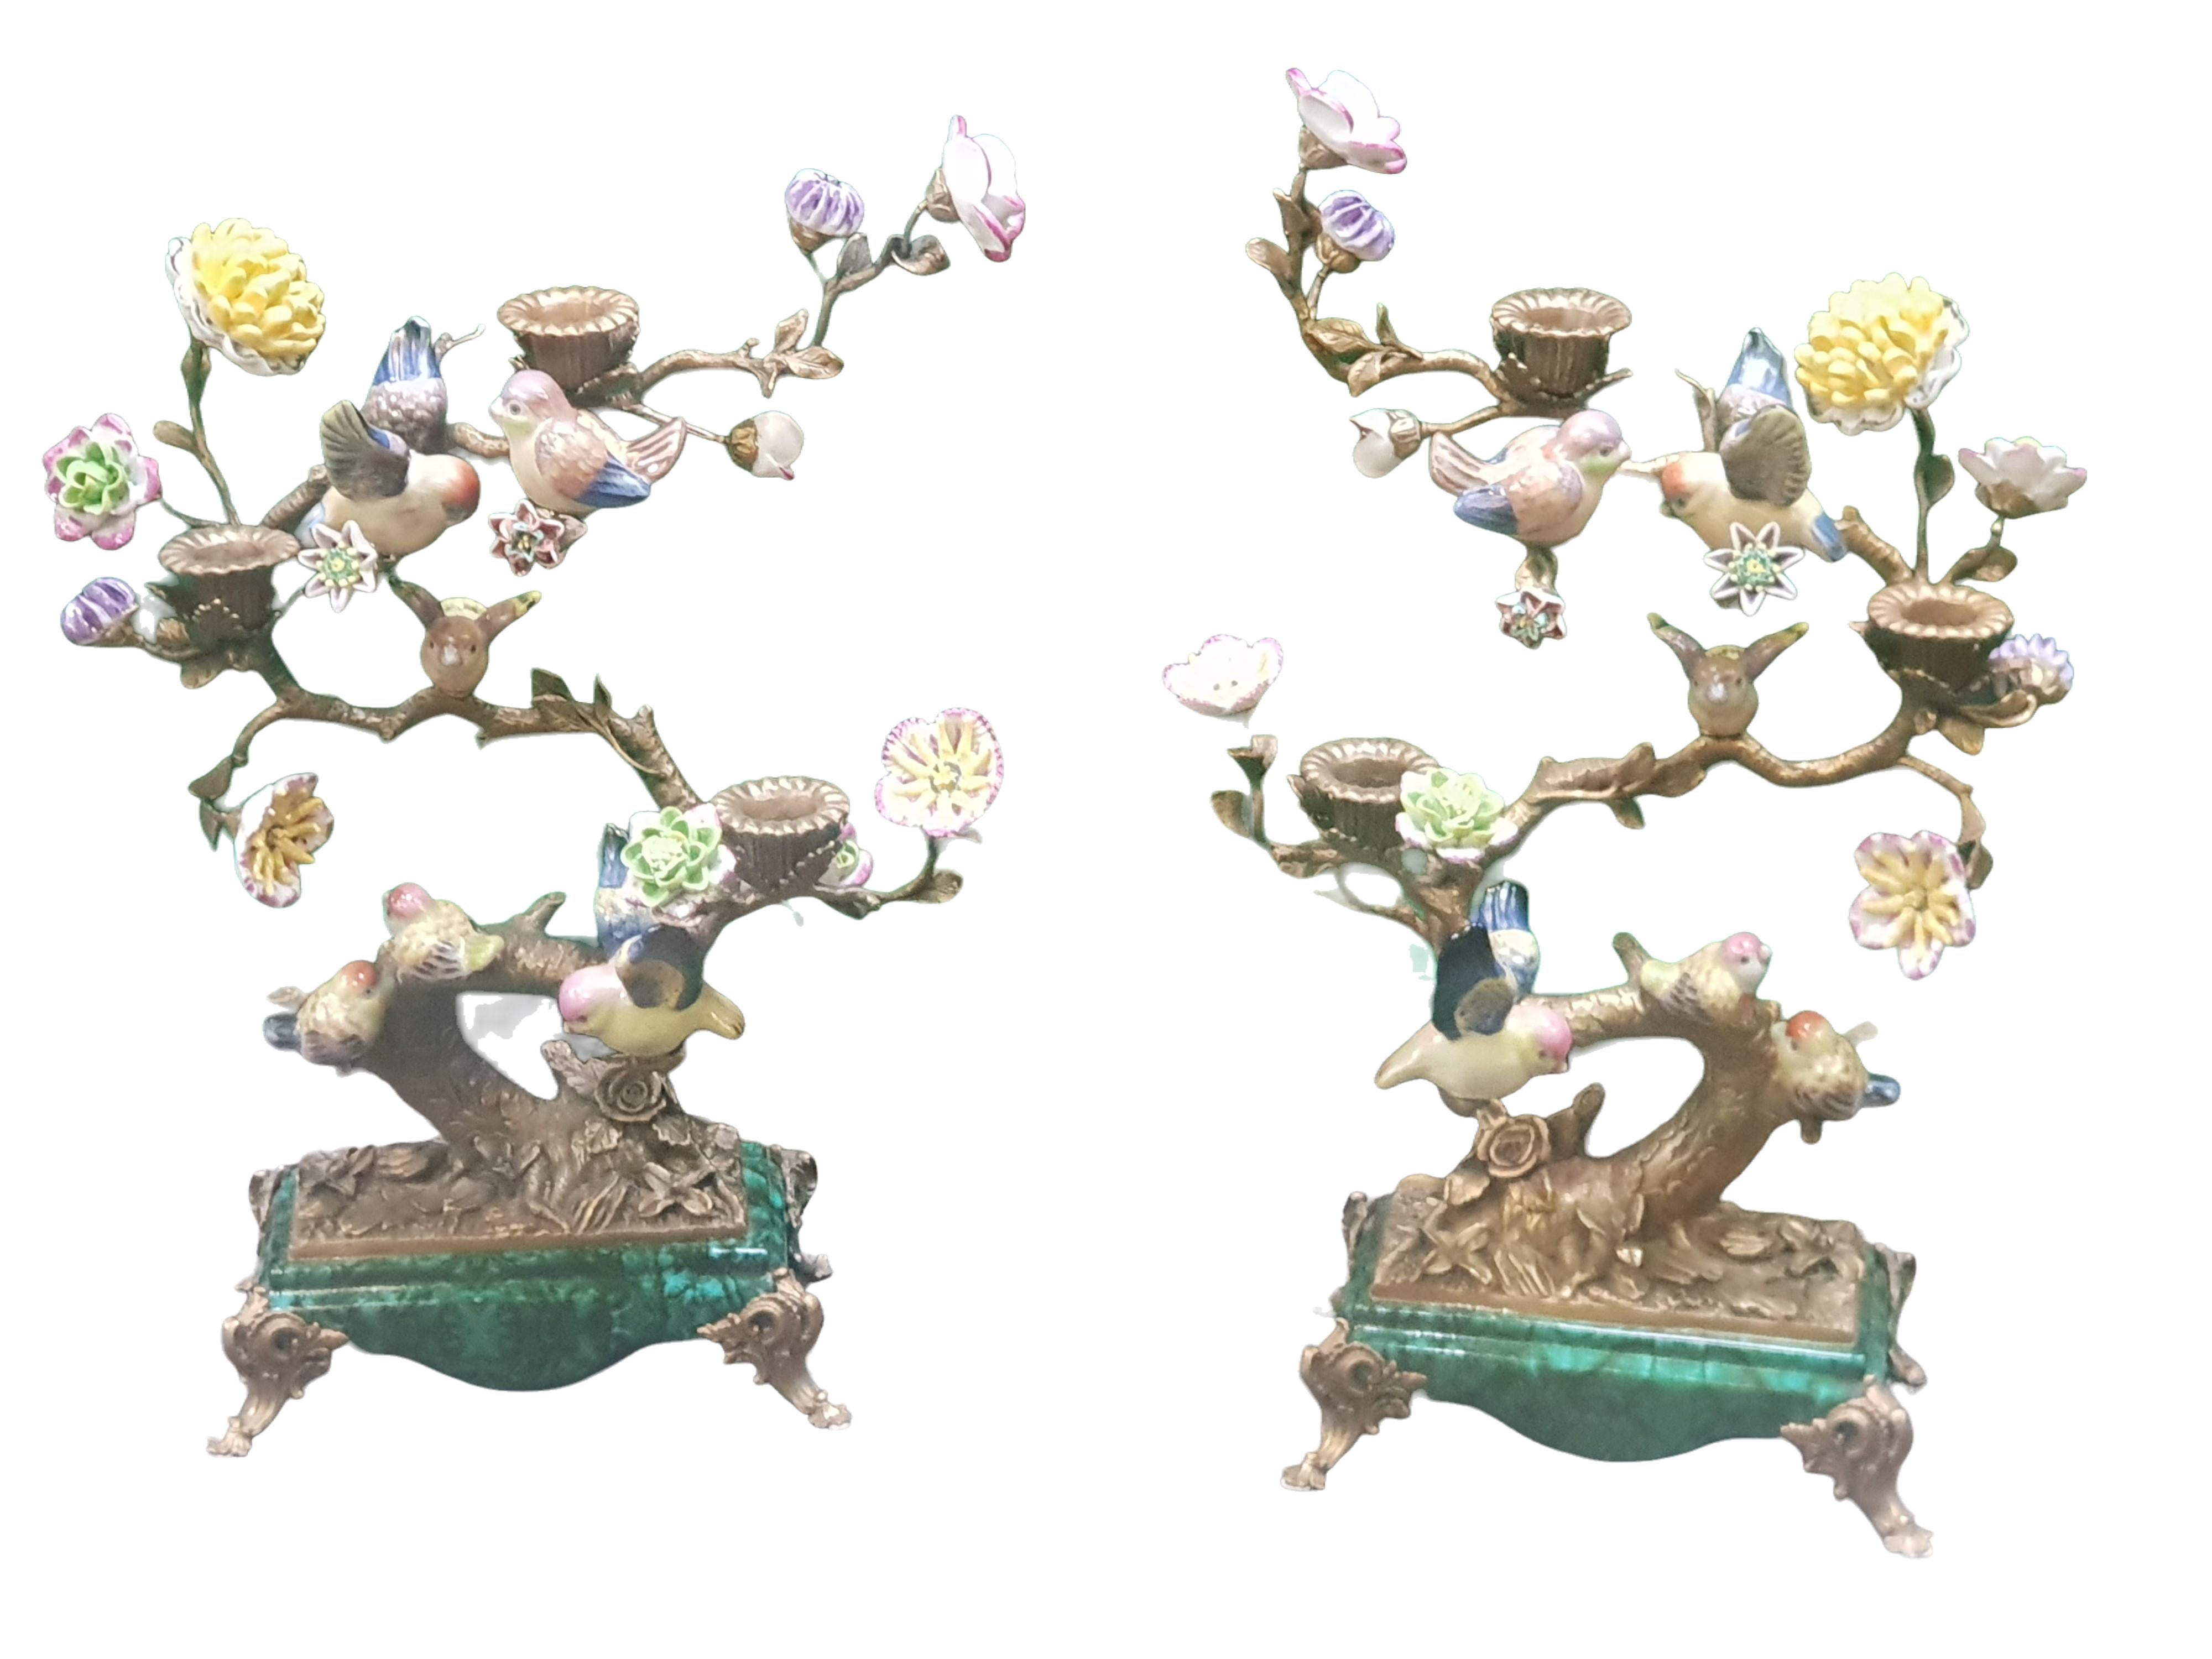 Ein entzückendes Paar Lebensbaum-Kandelaber
Jeder Branch hat handbemalte Porzellanblumen und Vögel
Jeder Kandelaber hat einen Sockel aus Kunstmalachit.